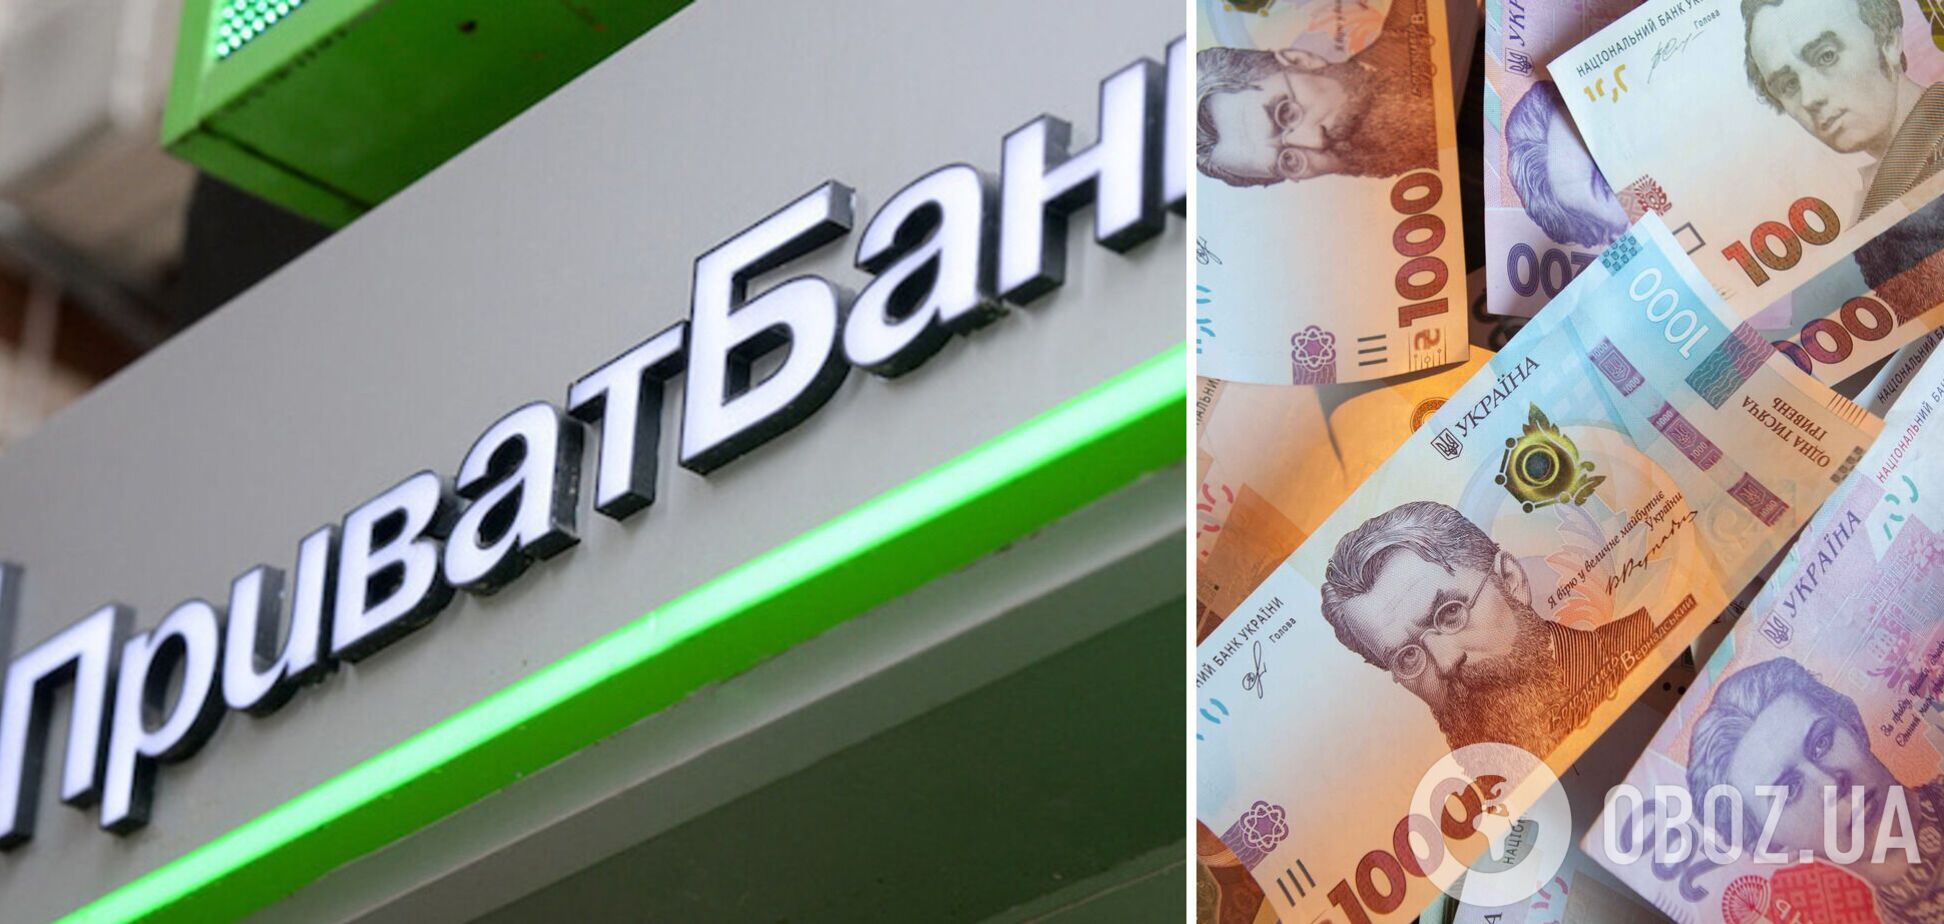 Украинец пополнил карту на 25 тыс. грн, но деньги на счет не пришли